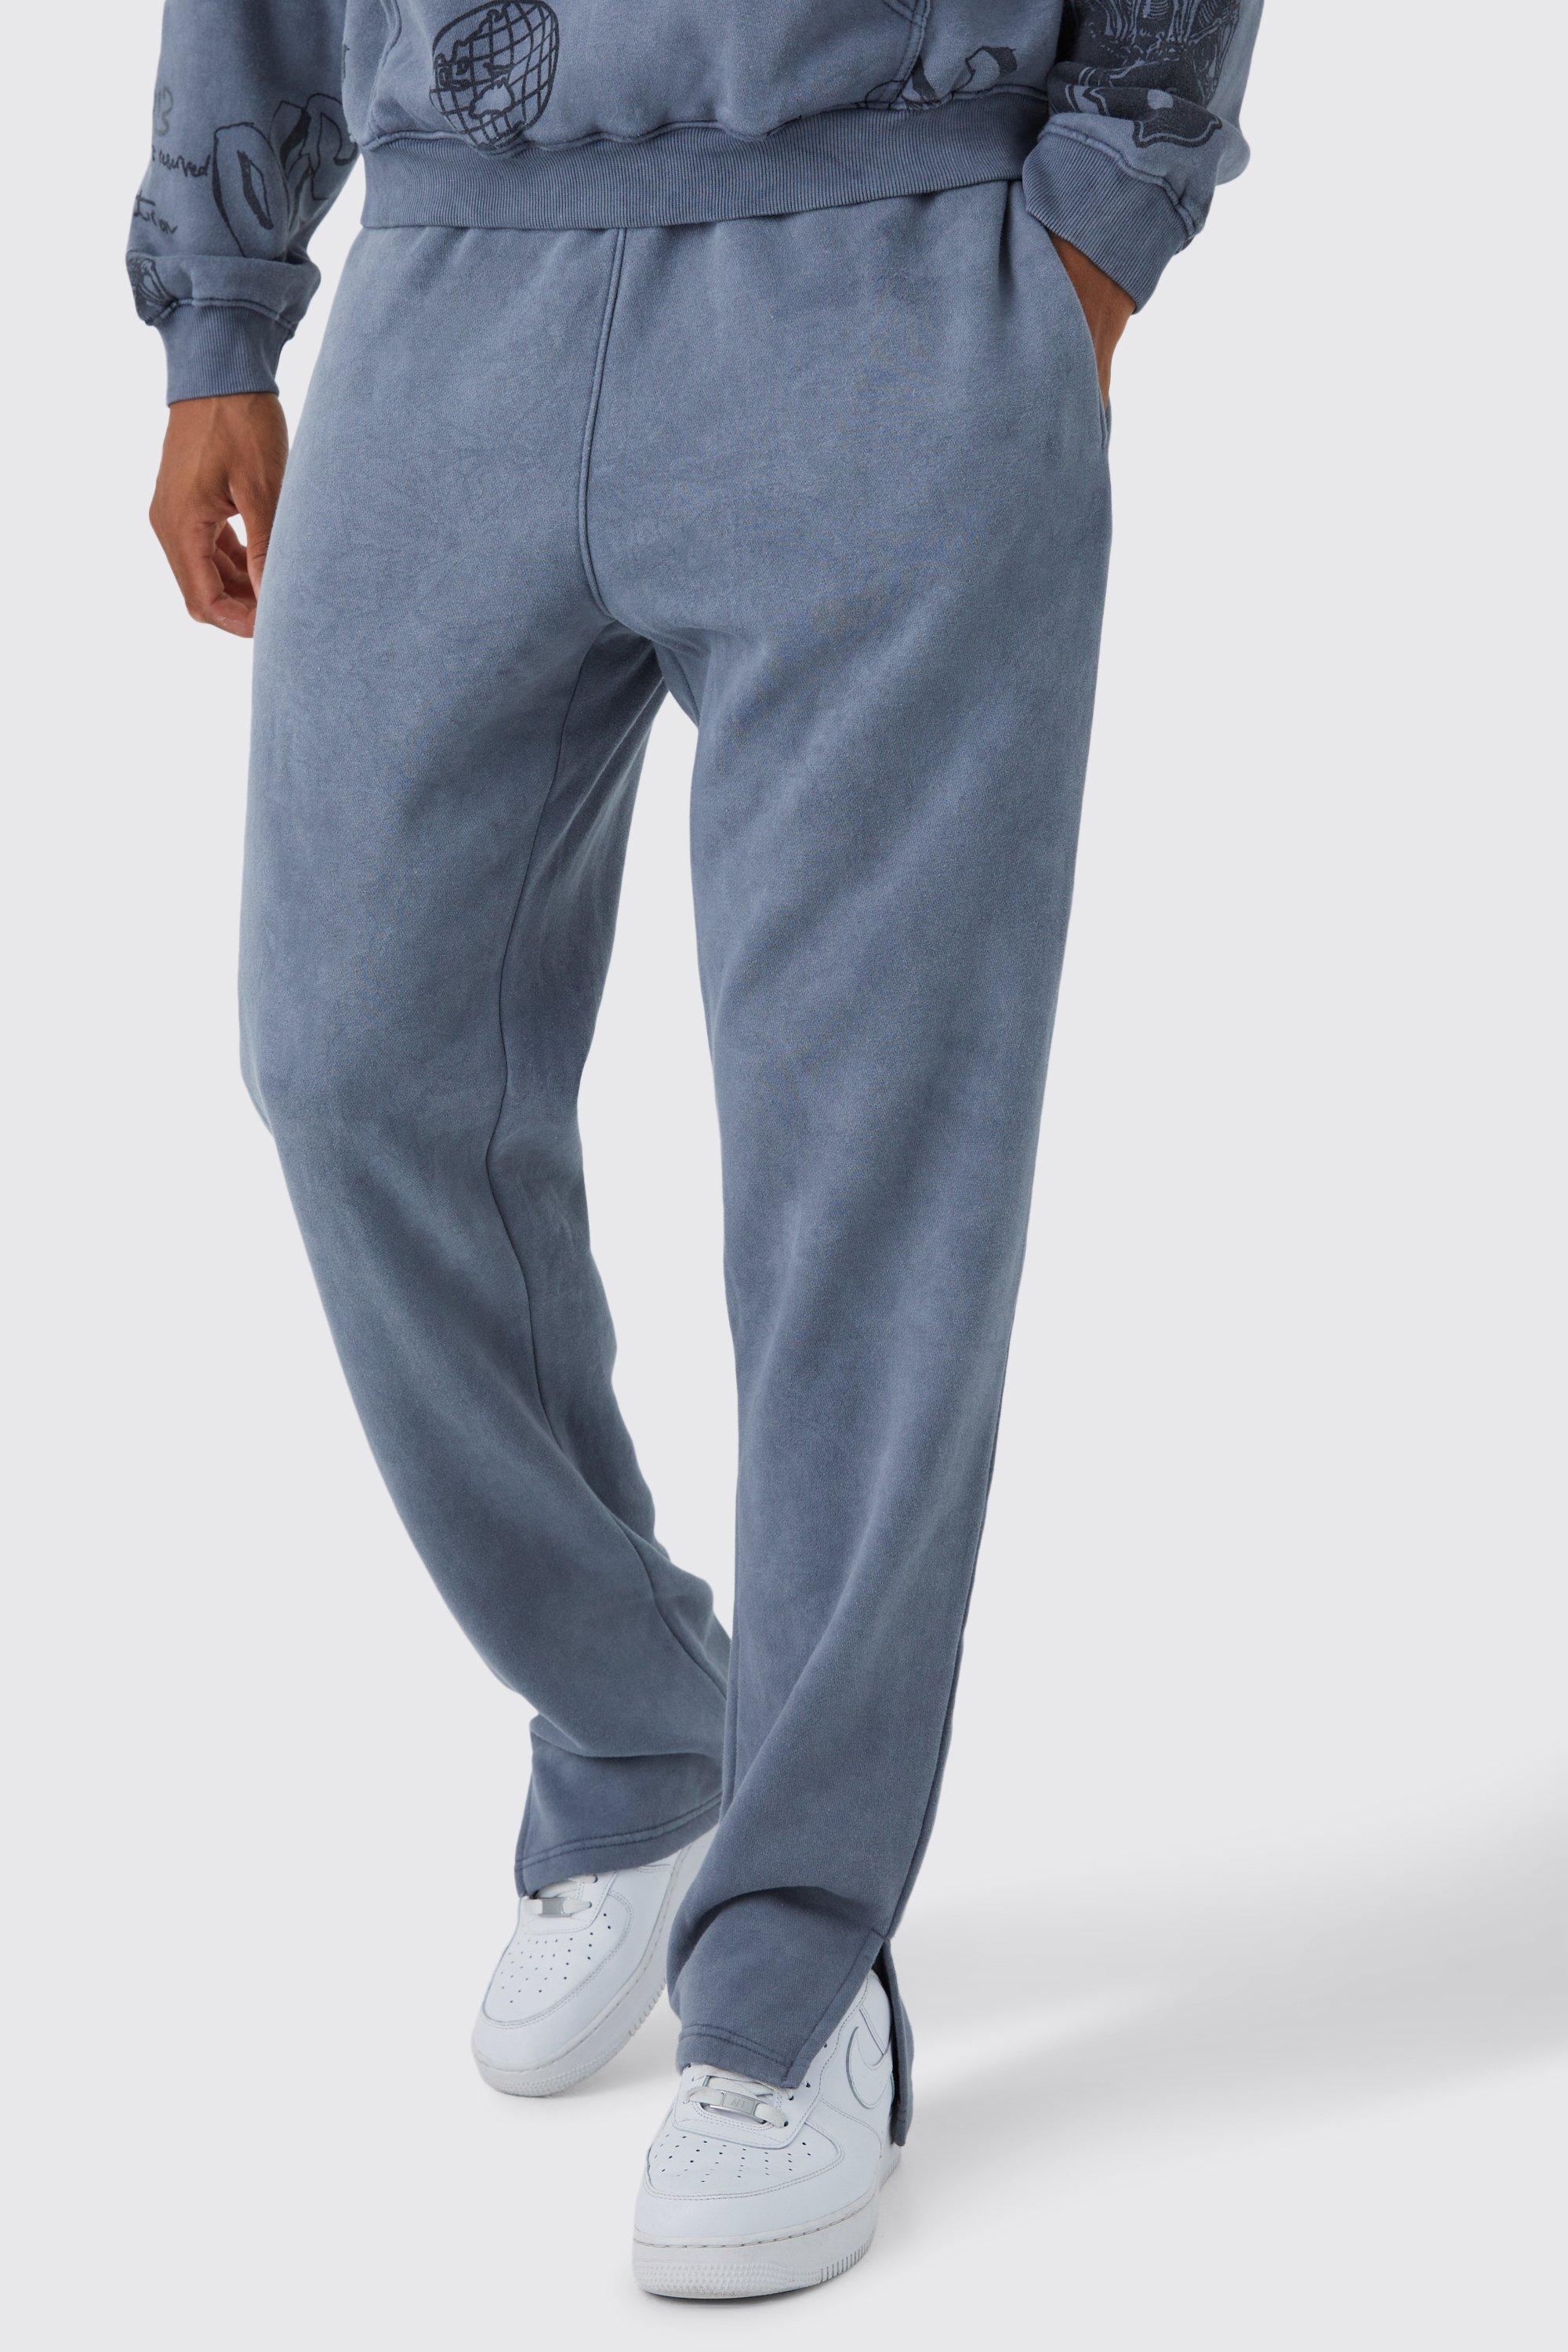 Image of Pantaloni tuta slavati Tall Core con spacco sul fondo, Grigio